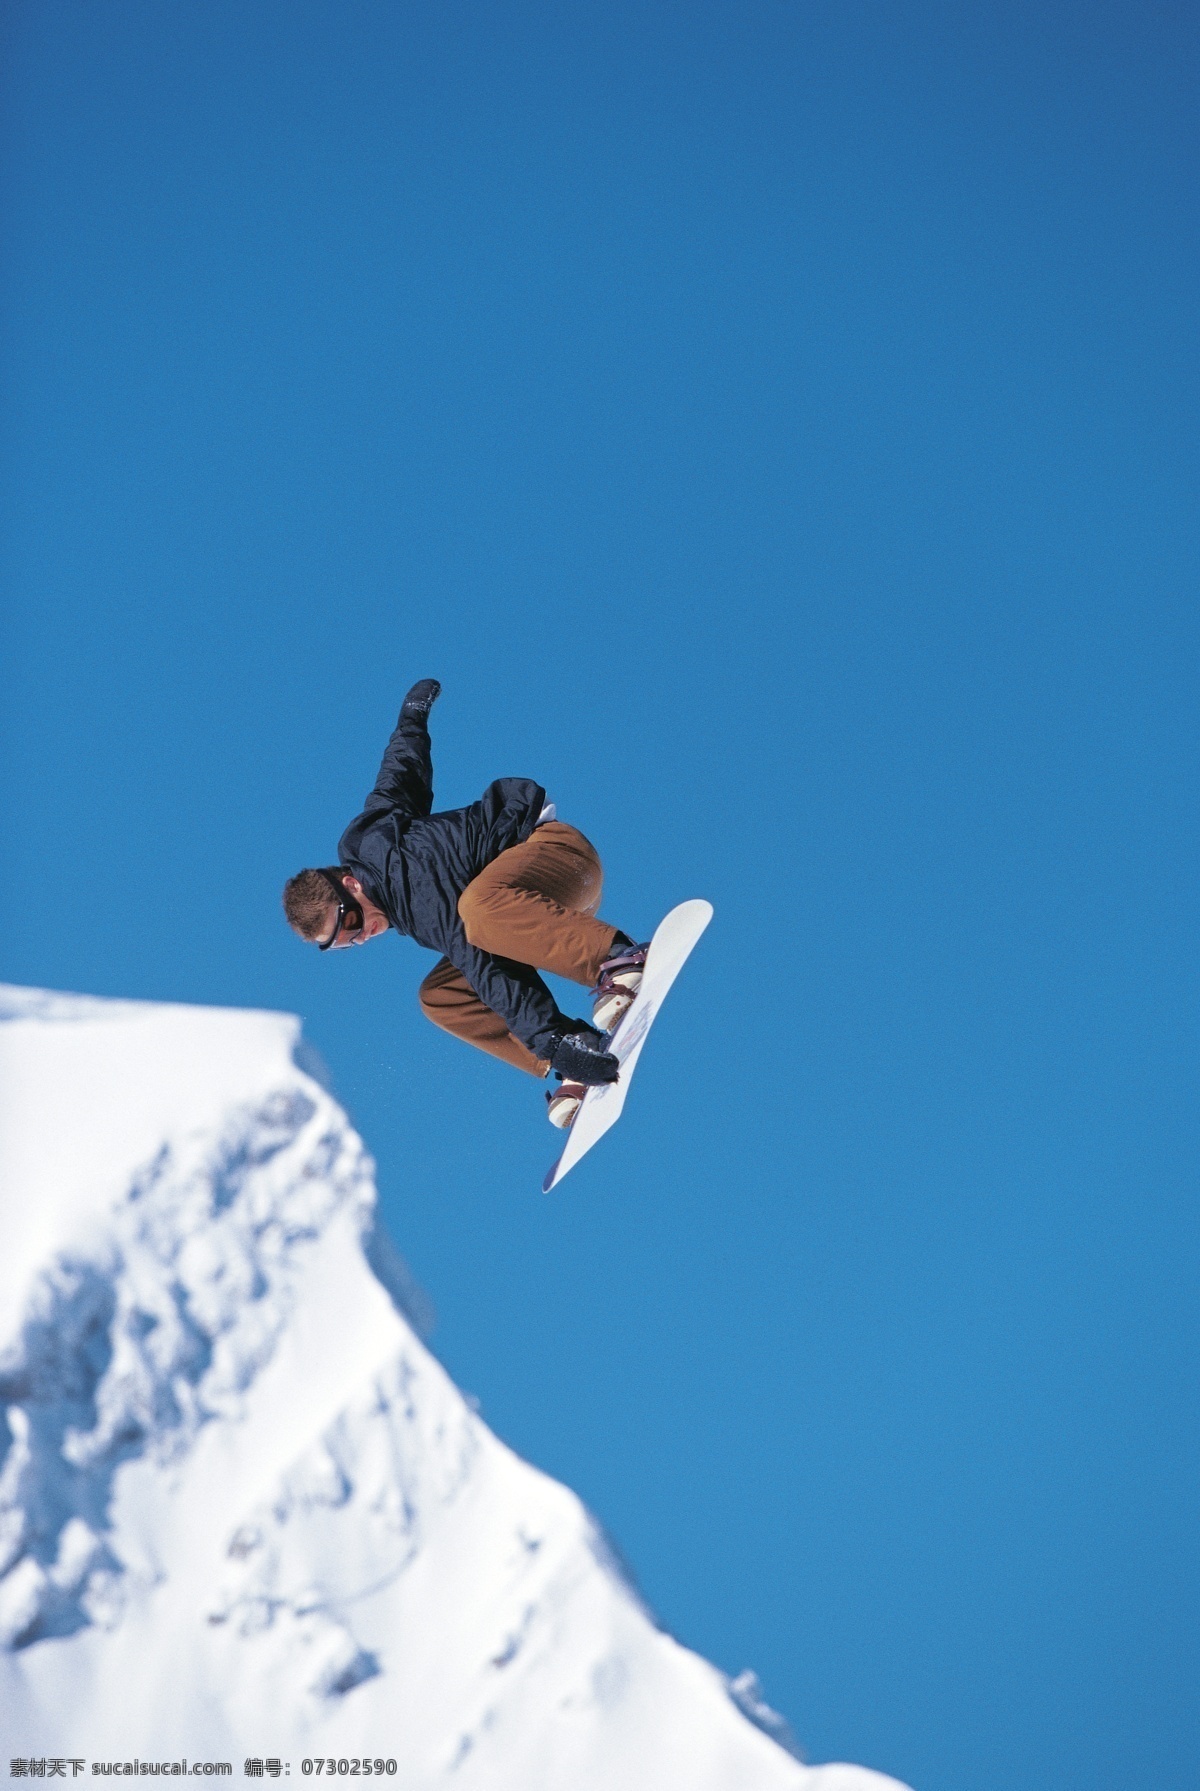 腾空 跳跃 滑雪 运动员 雪地运动 划雪运动 极限运动 体育项目 飞跃 运动图片 生活百科 雪山 风景 摄影图片 高清图片 滑雪图片